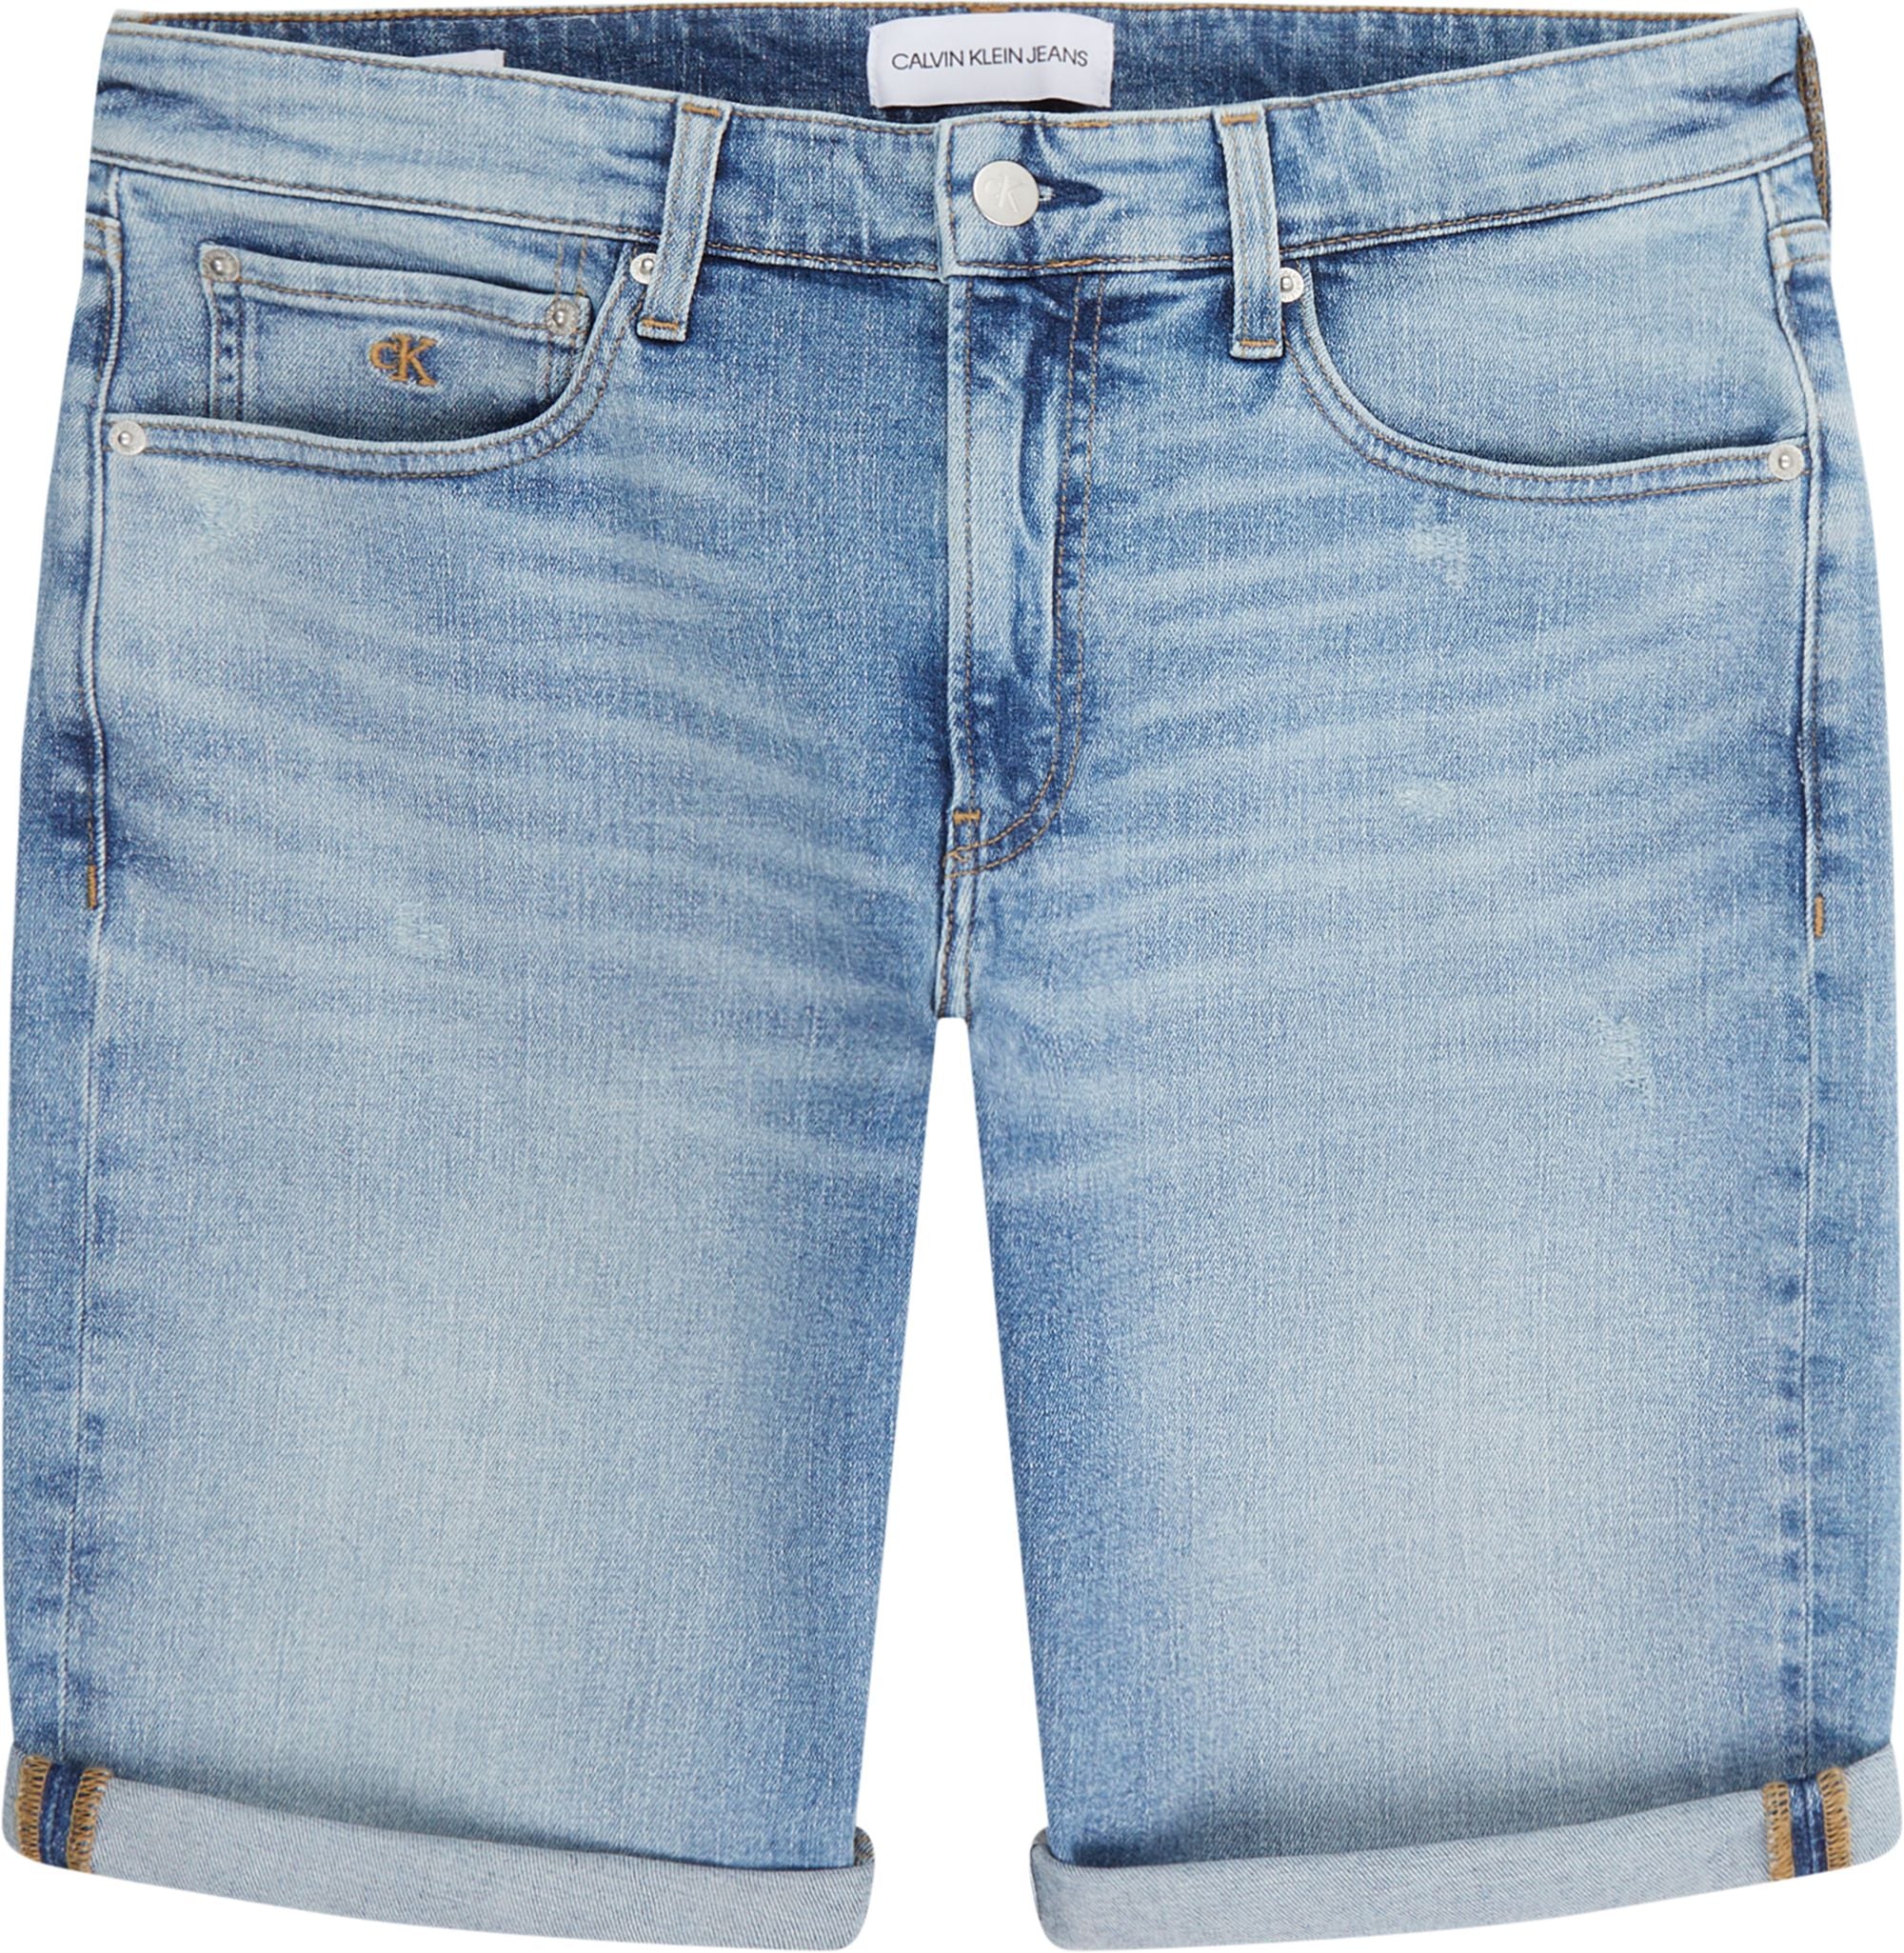 Calvin Klein Jeans Regular Short Denim Light